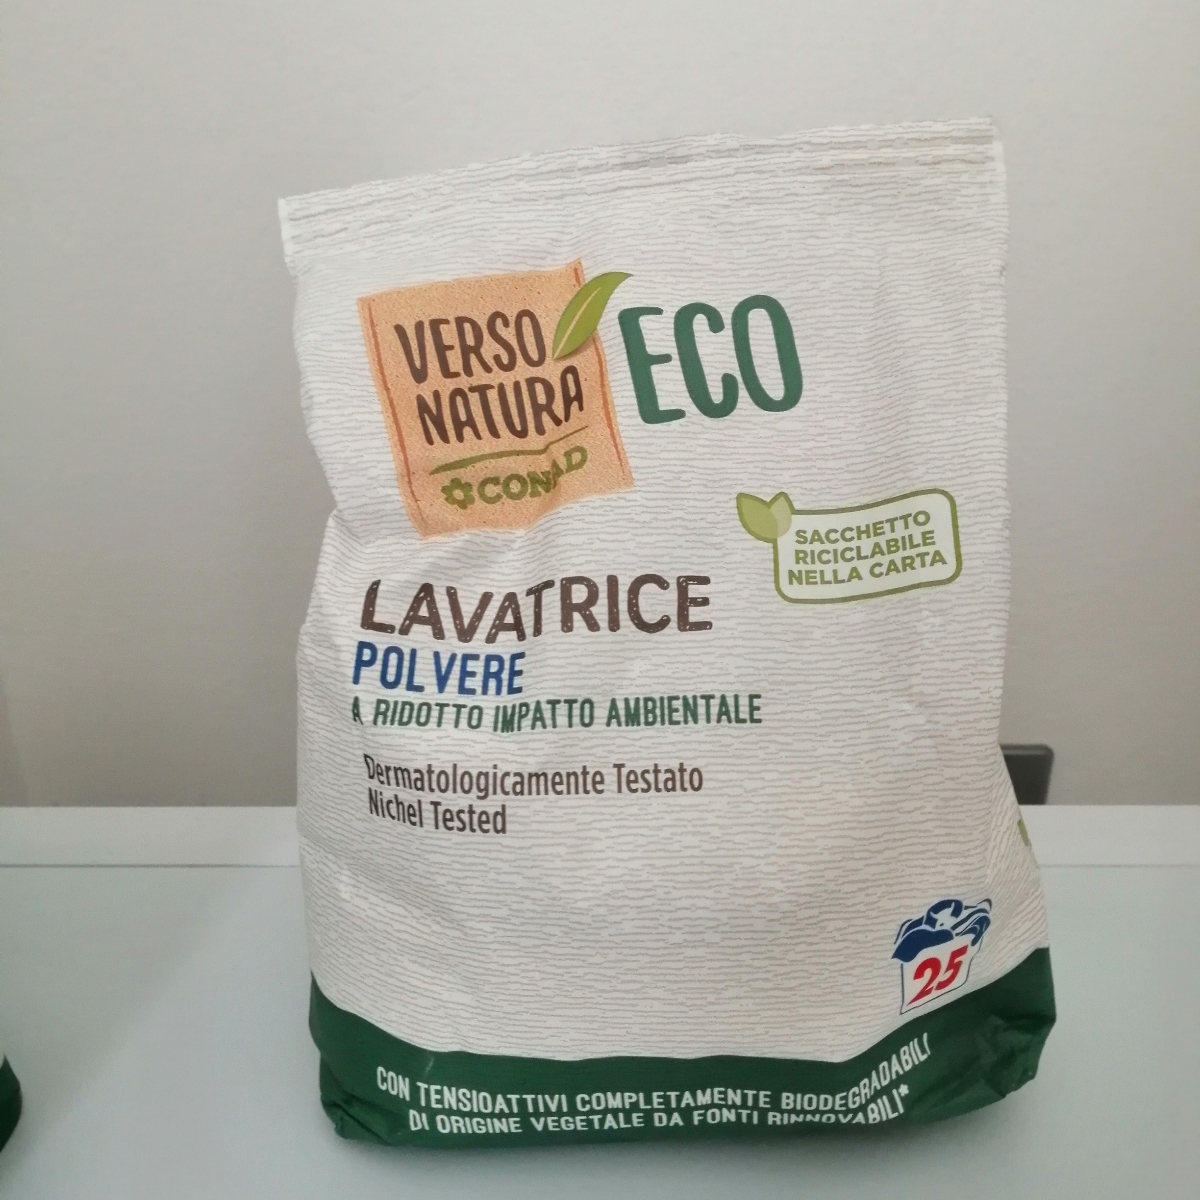 Verso Natura Eco Conad Lavatrice polvere Reviews | abillion